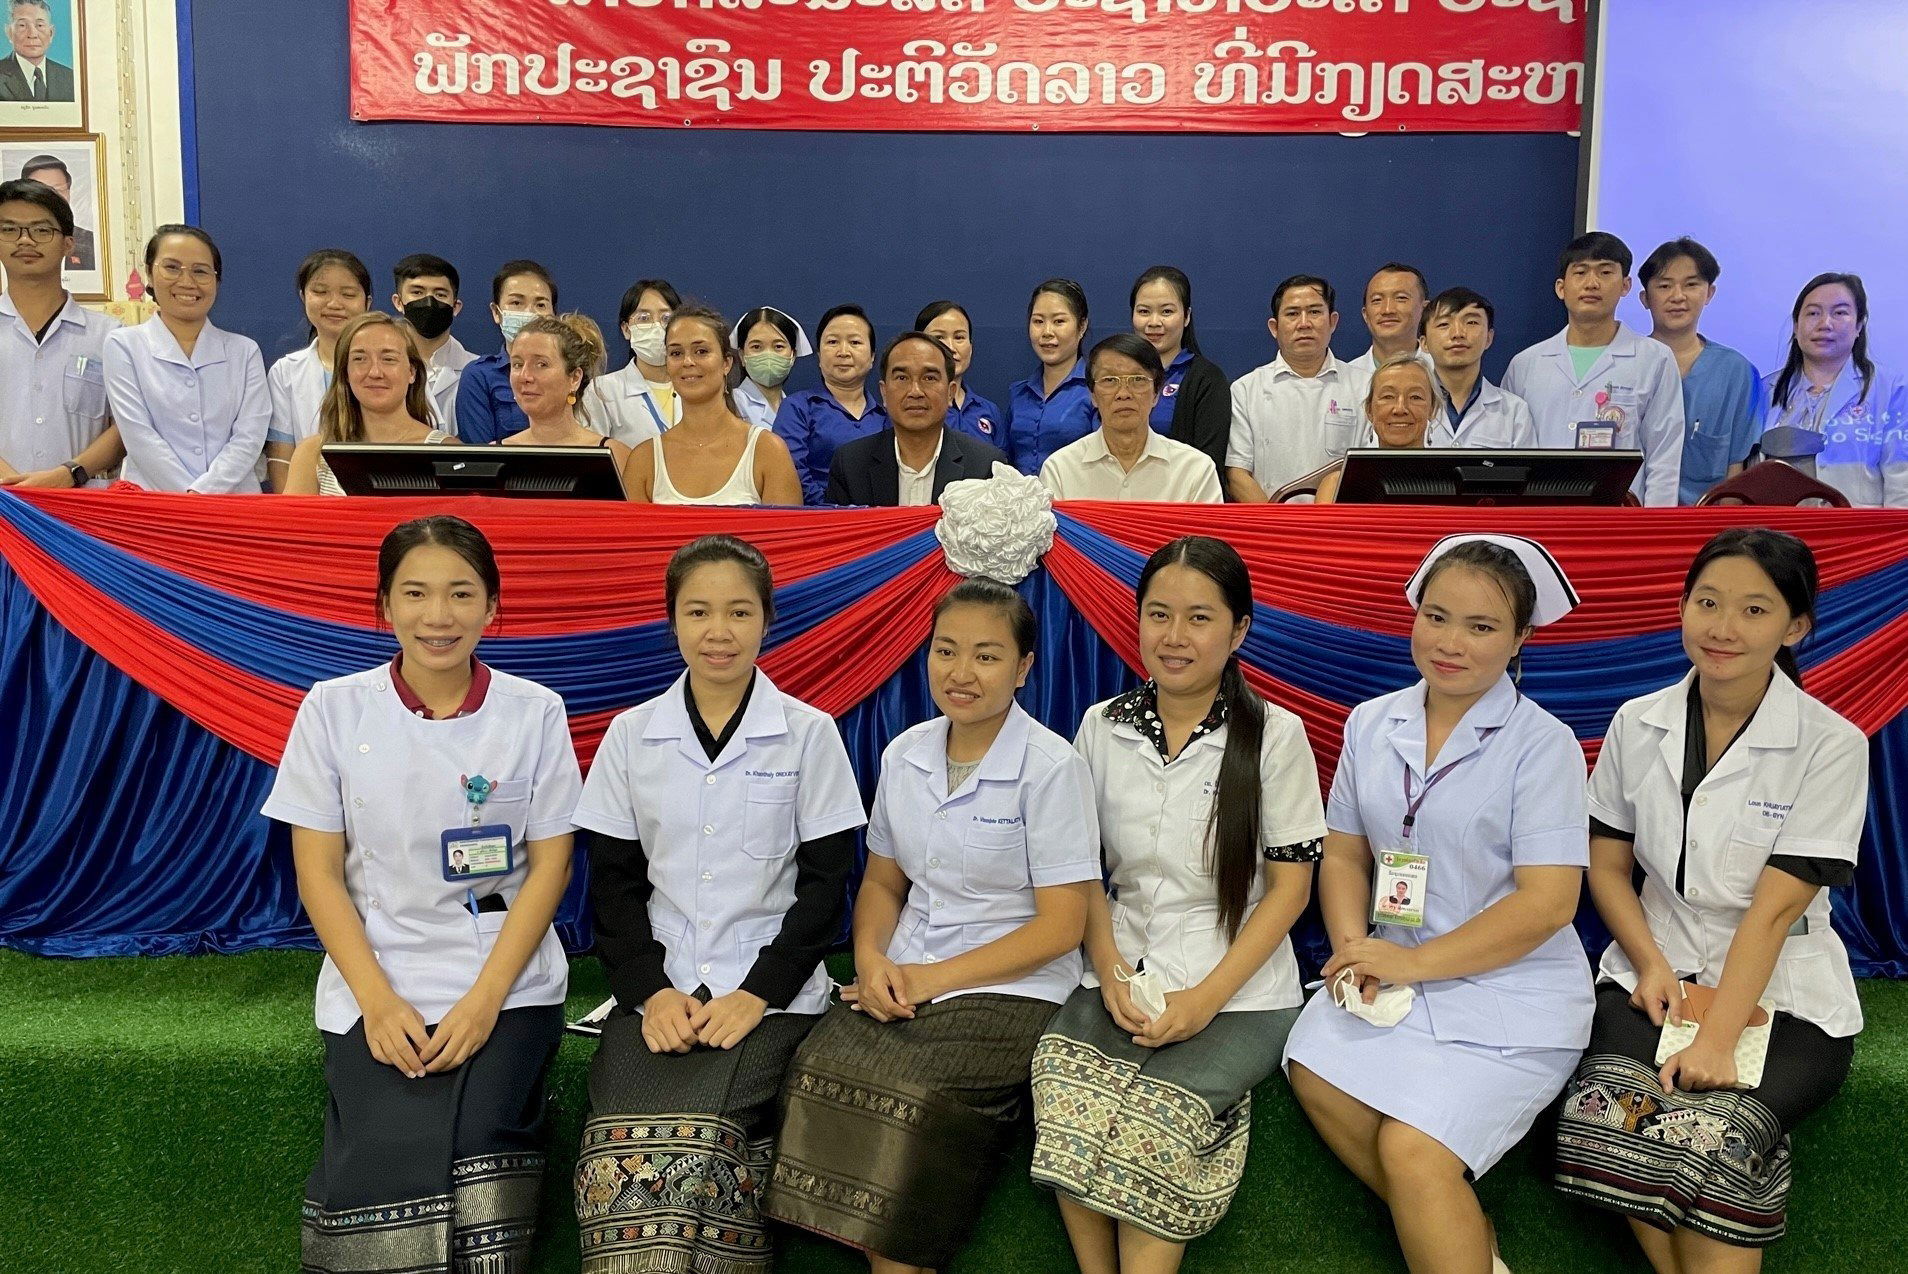 SEPTEMBRE 2022: PREMIERE MISSION de Partenariat entre Hopital Mahosot de Vientiane et Hopital Croix Rousse de Lyon formation frottis de dépistage du cancer du col